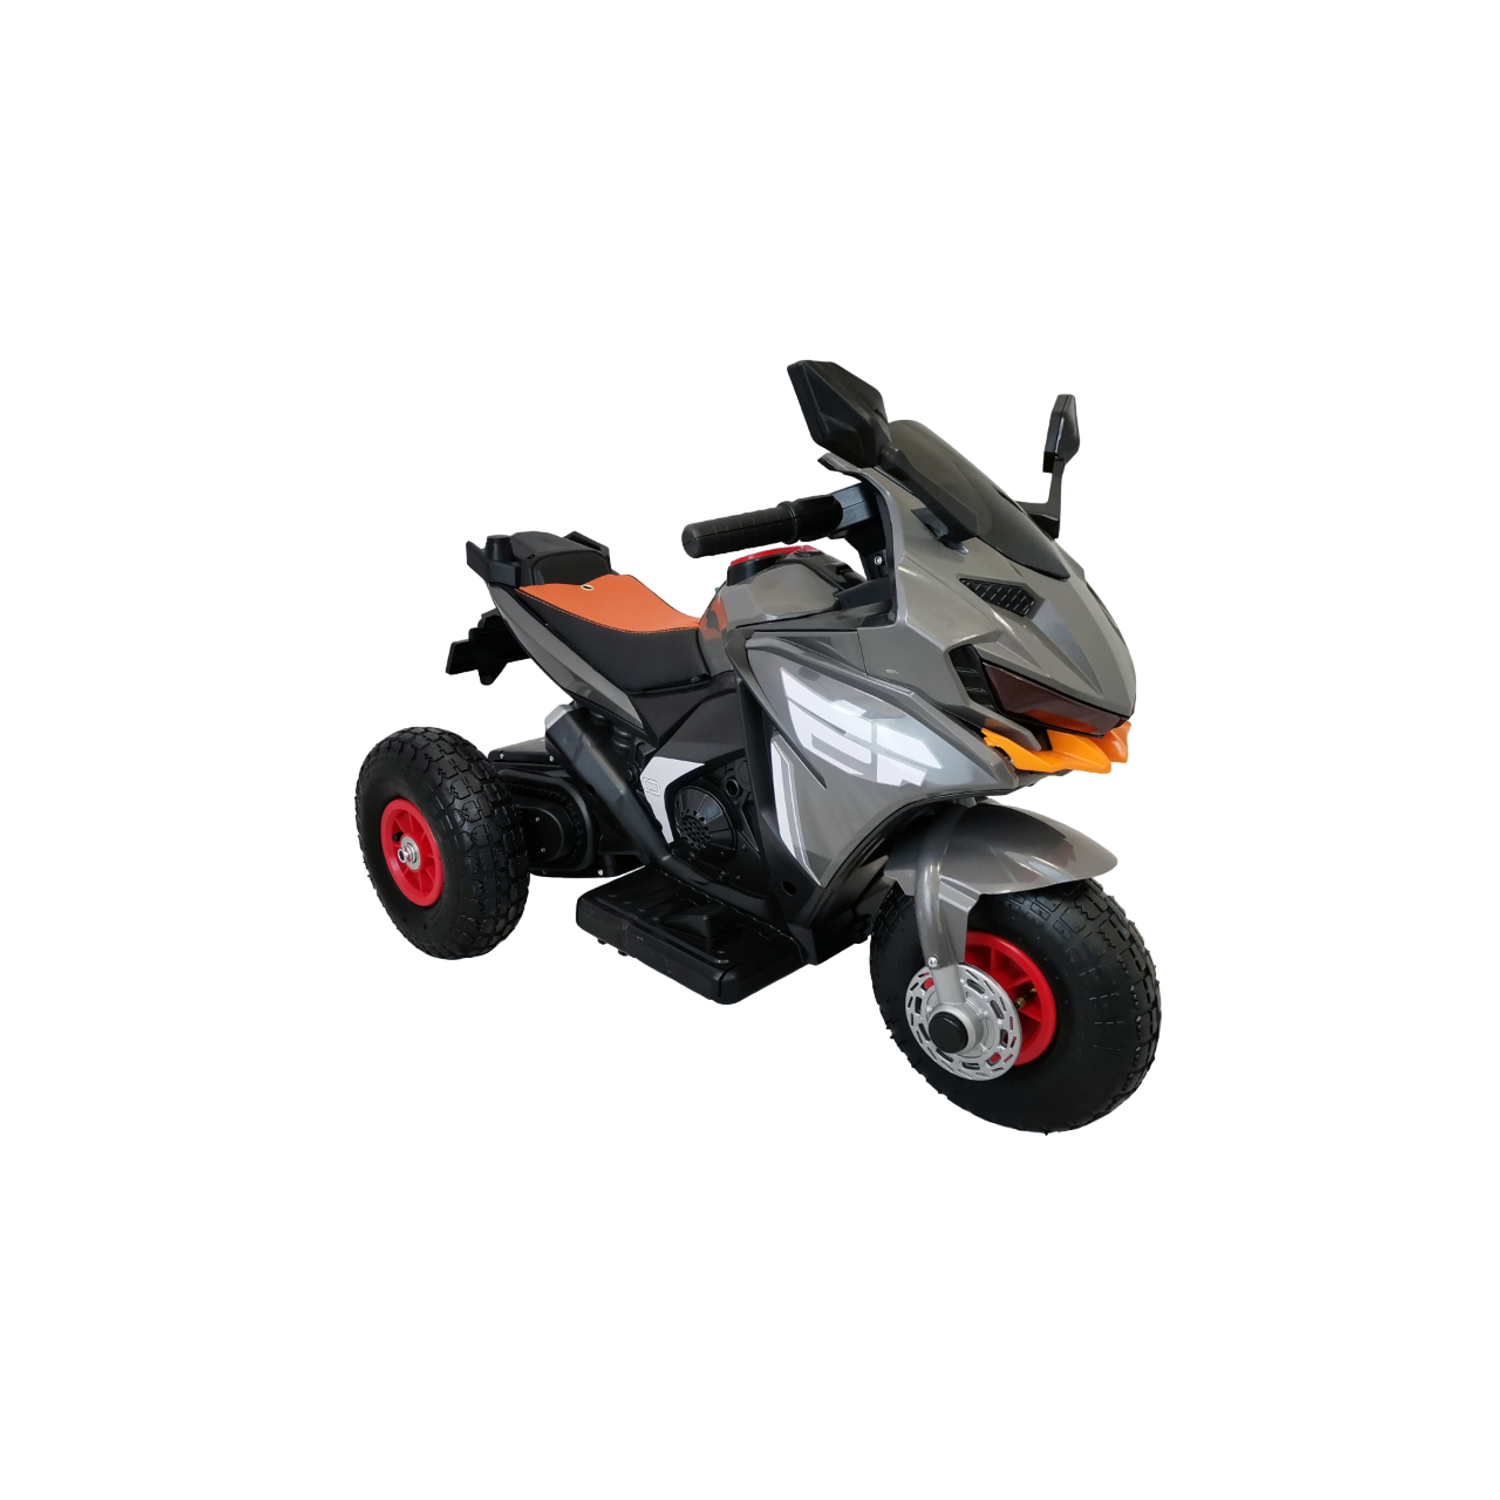 Электромотоцикл детский Jiajia трицикл 2 мотора надувные колеса - фото 1